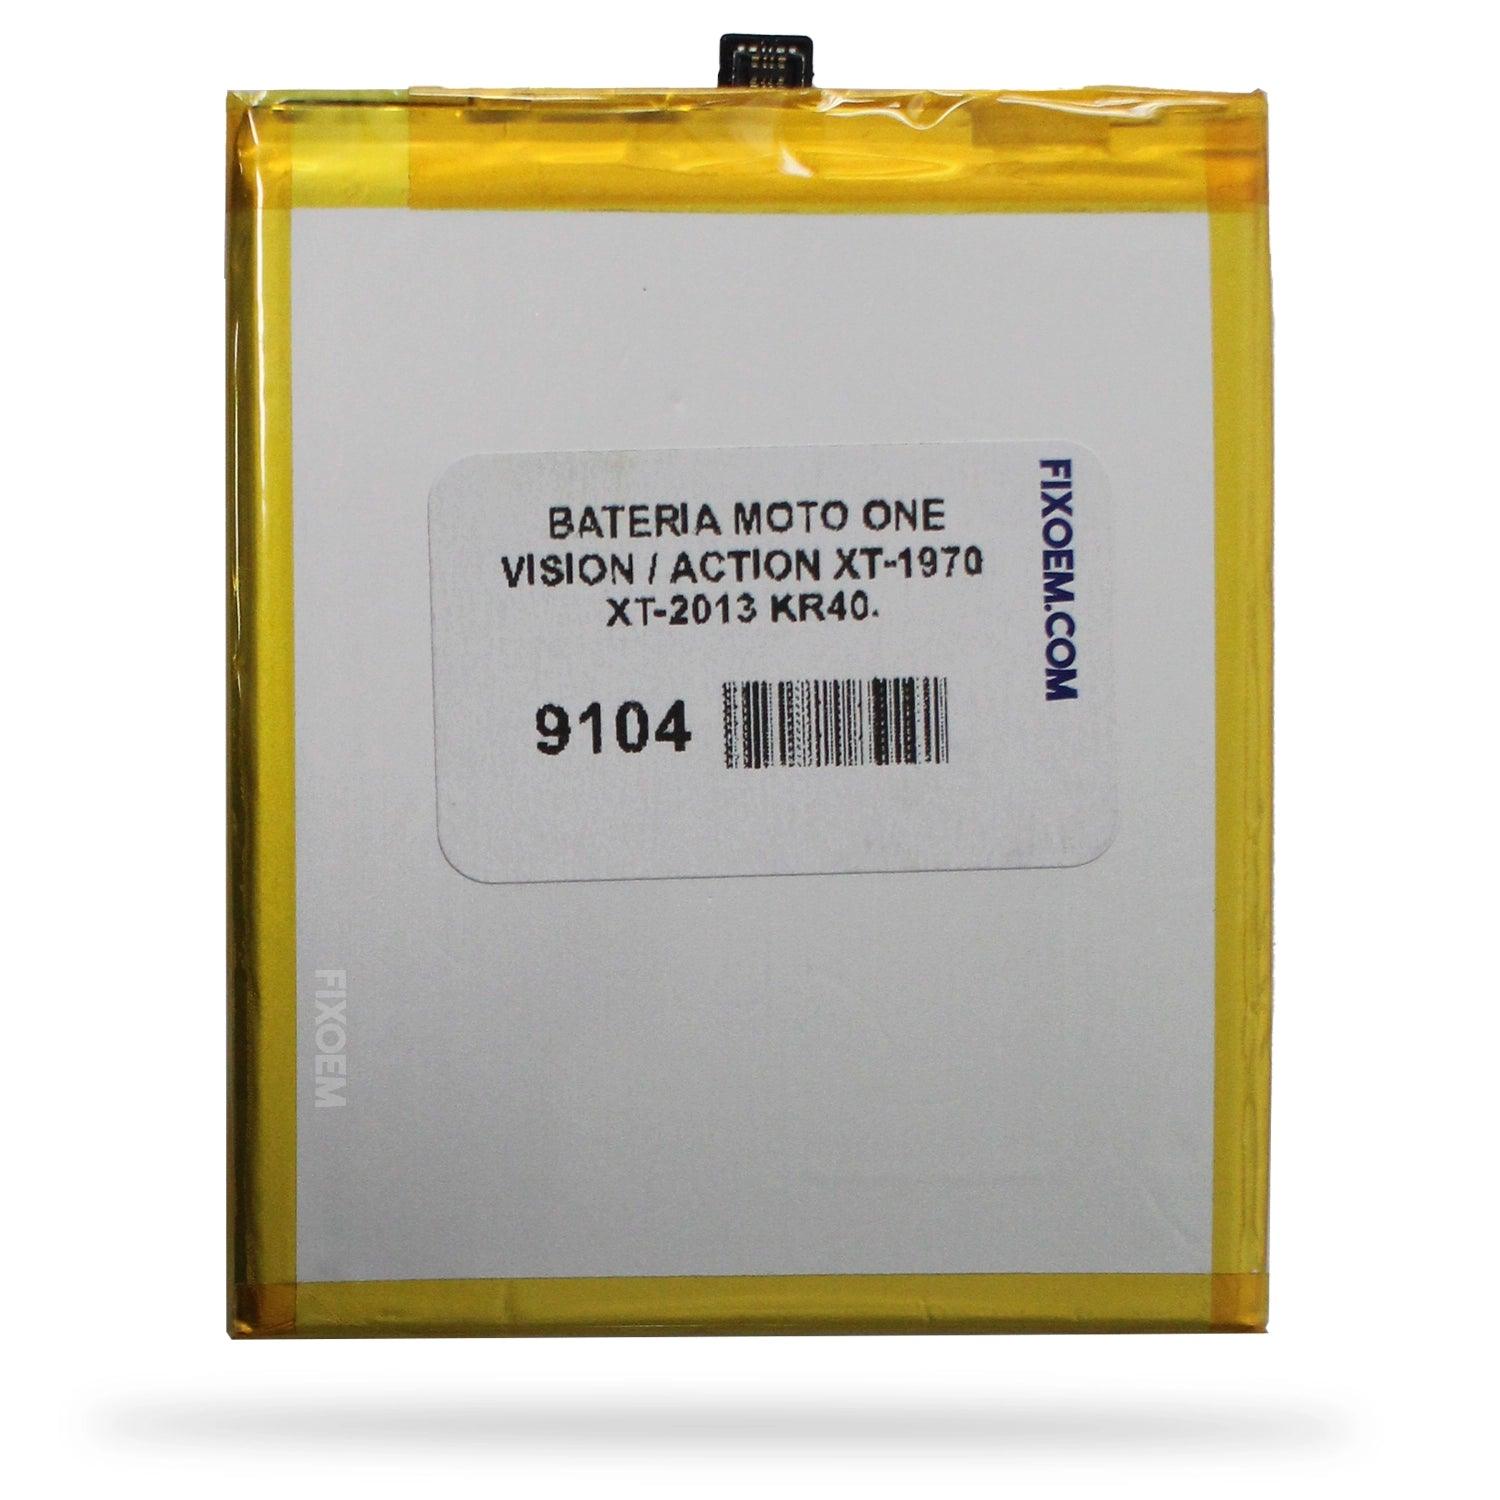 Bateria Moto One Vision / Action Xt-1970 XT2013 Kr40. a solo $ 130.00 Refaccion y puestos celulares, refurbish y microelectronica.- FixOEM